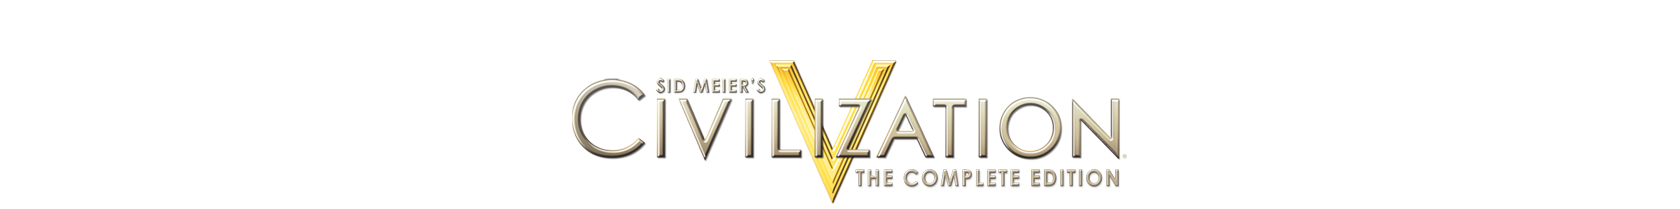 Civilization Complete Edition - Civilization, Transparent background PNG HD thumbnail